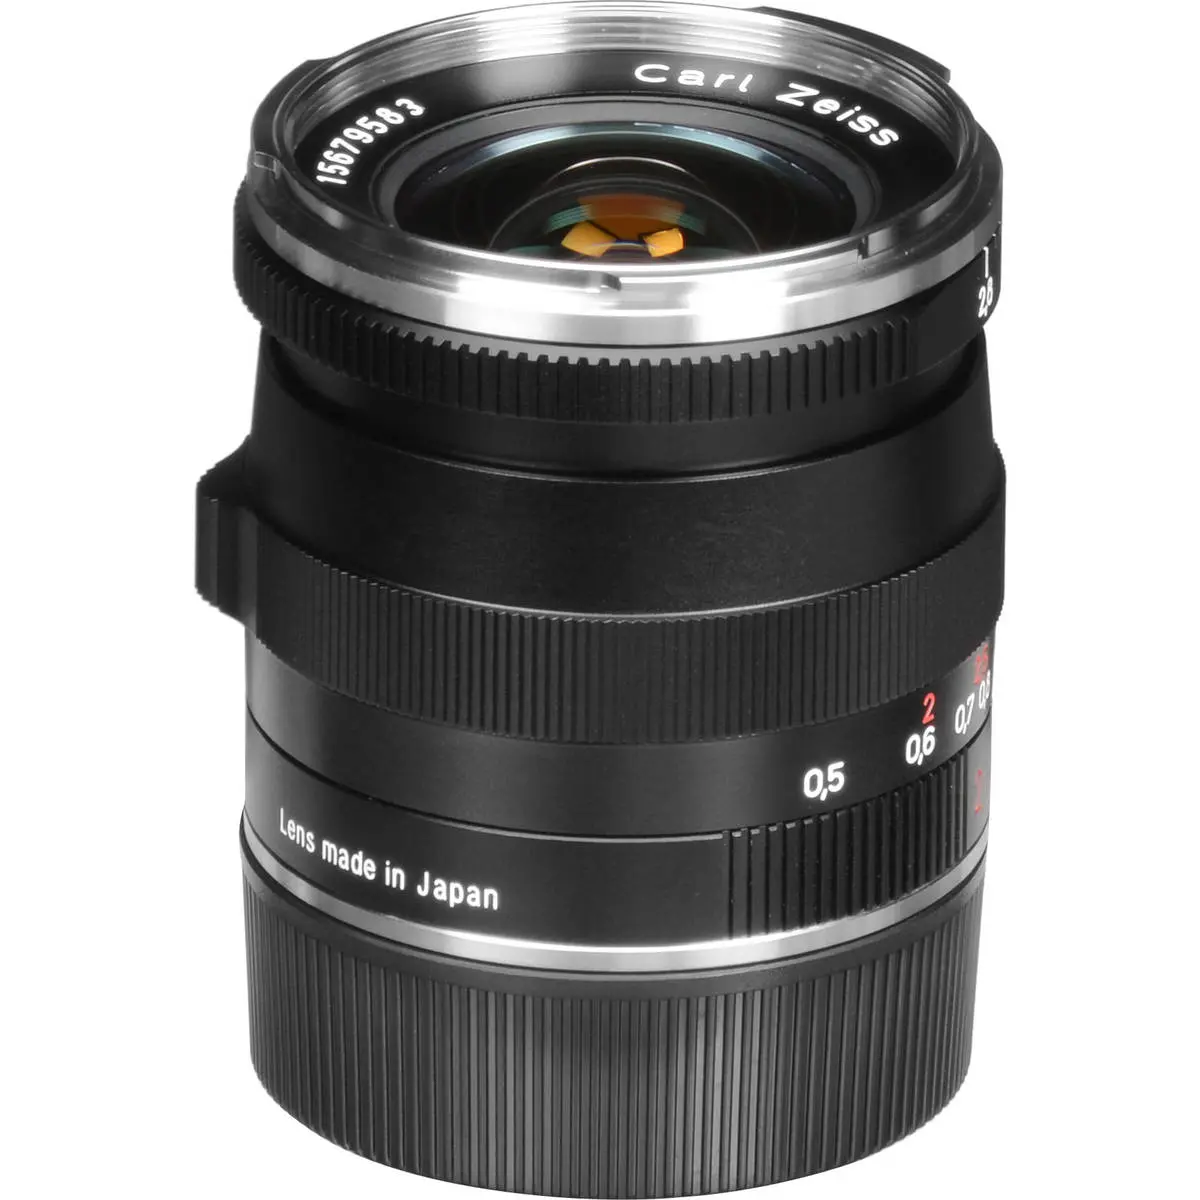 11. Carl Zeiss 21mm F/2.8 BIOGON T* ZM (Leica M) Black Lens